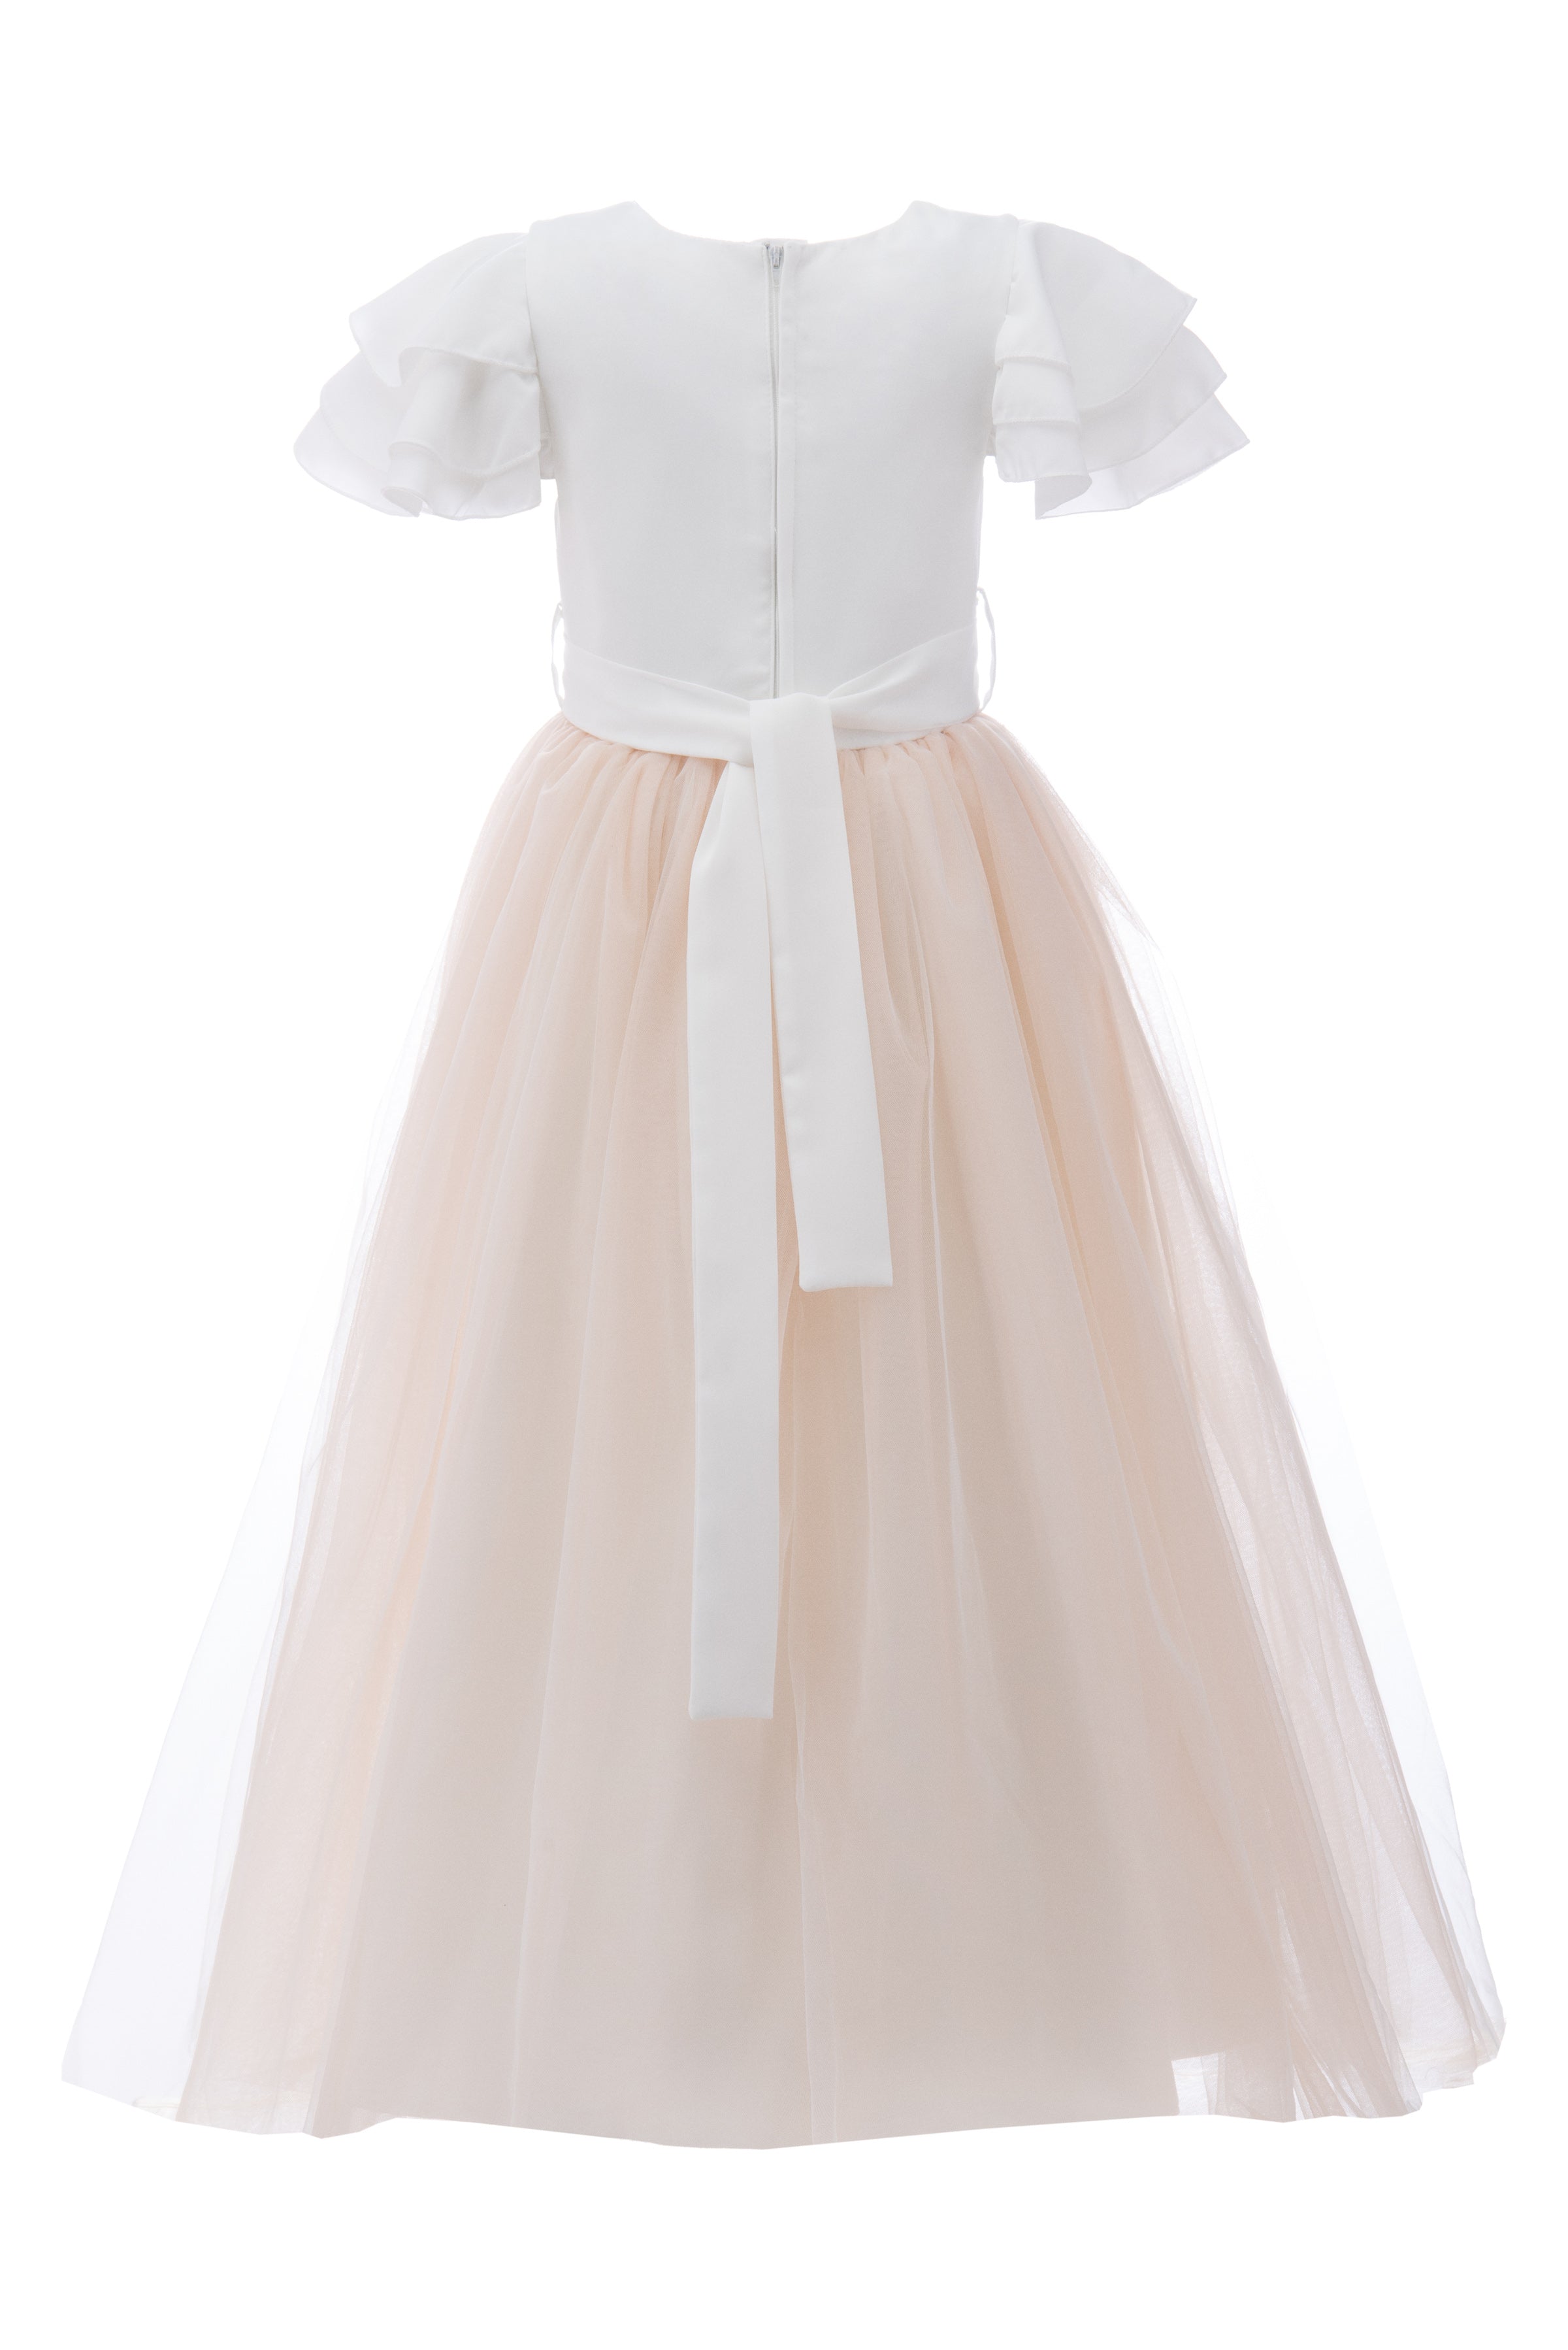 kids-atelier-tulleen-kid-girl-white-almeria-teacup-gown-tav210